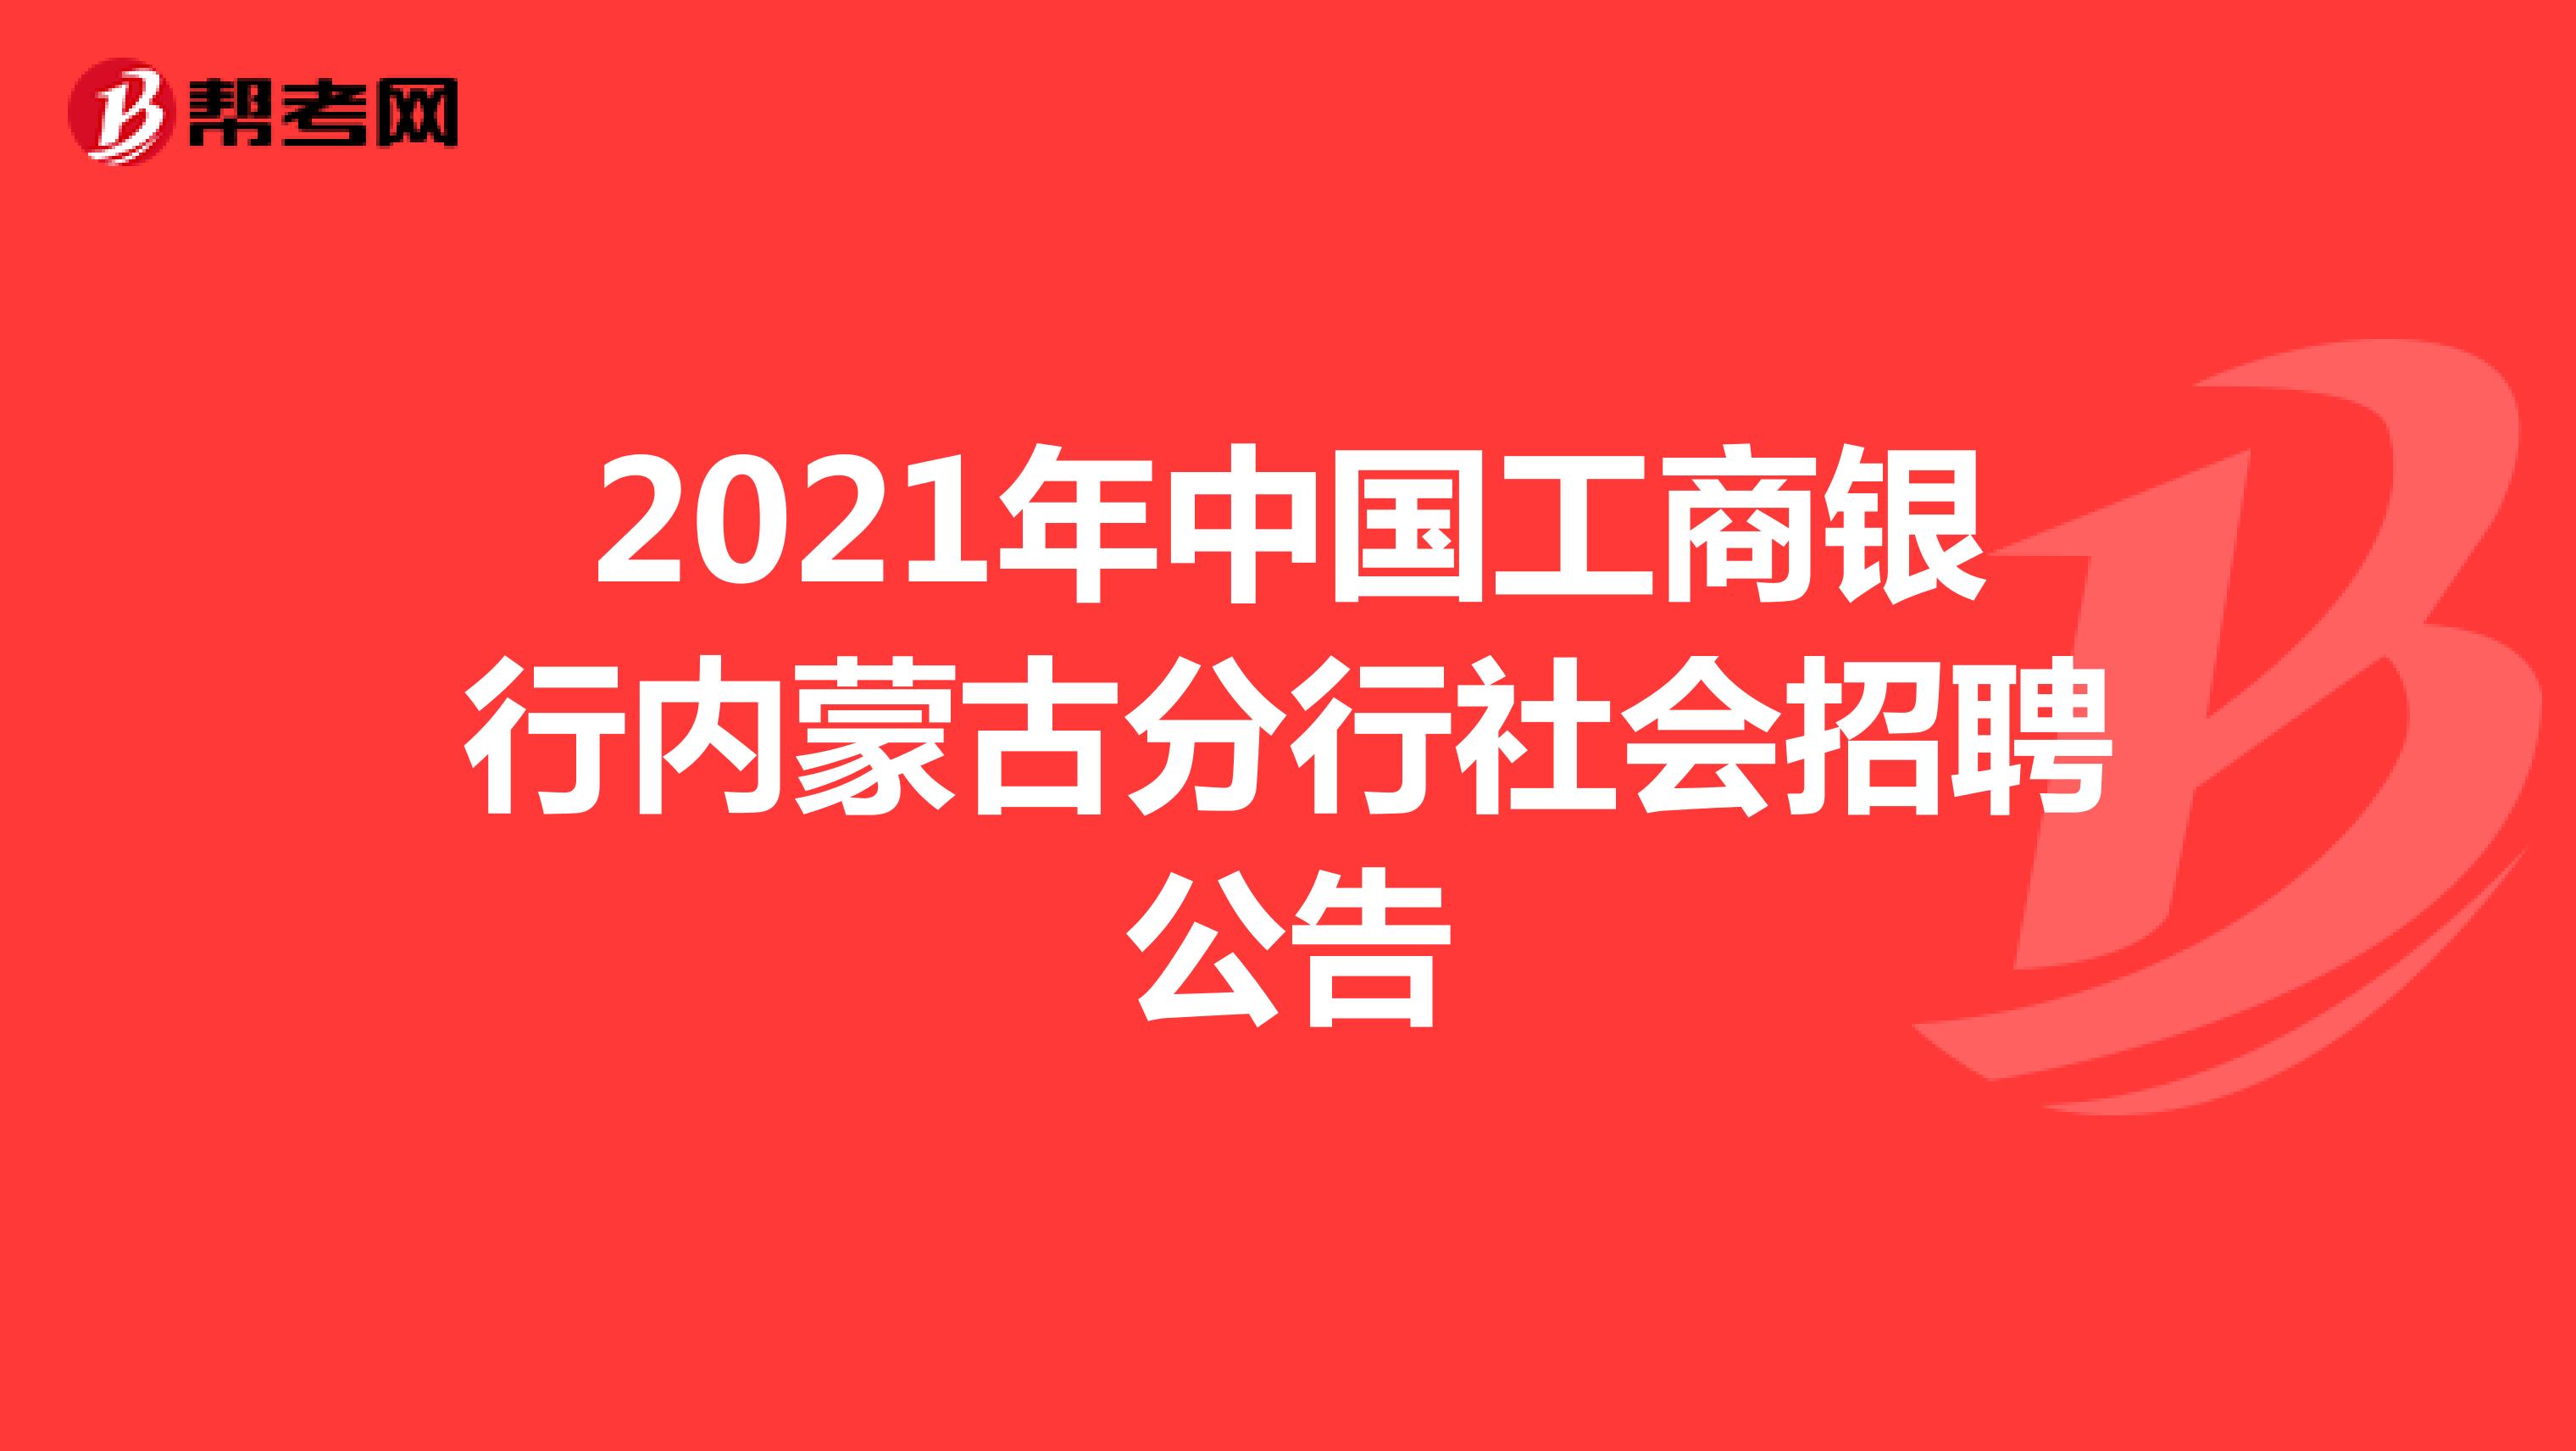 2021年中国工商银行内蒙古分行社会招聘公告